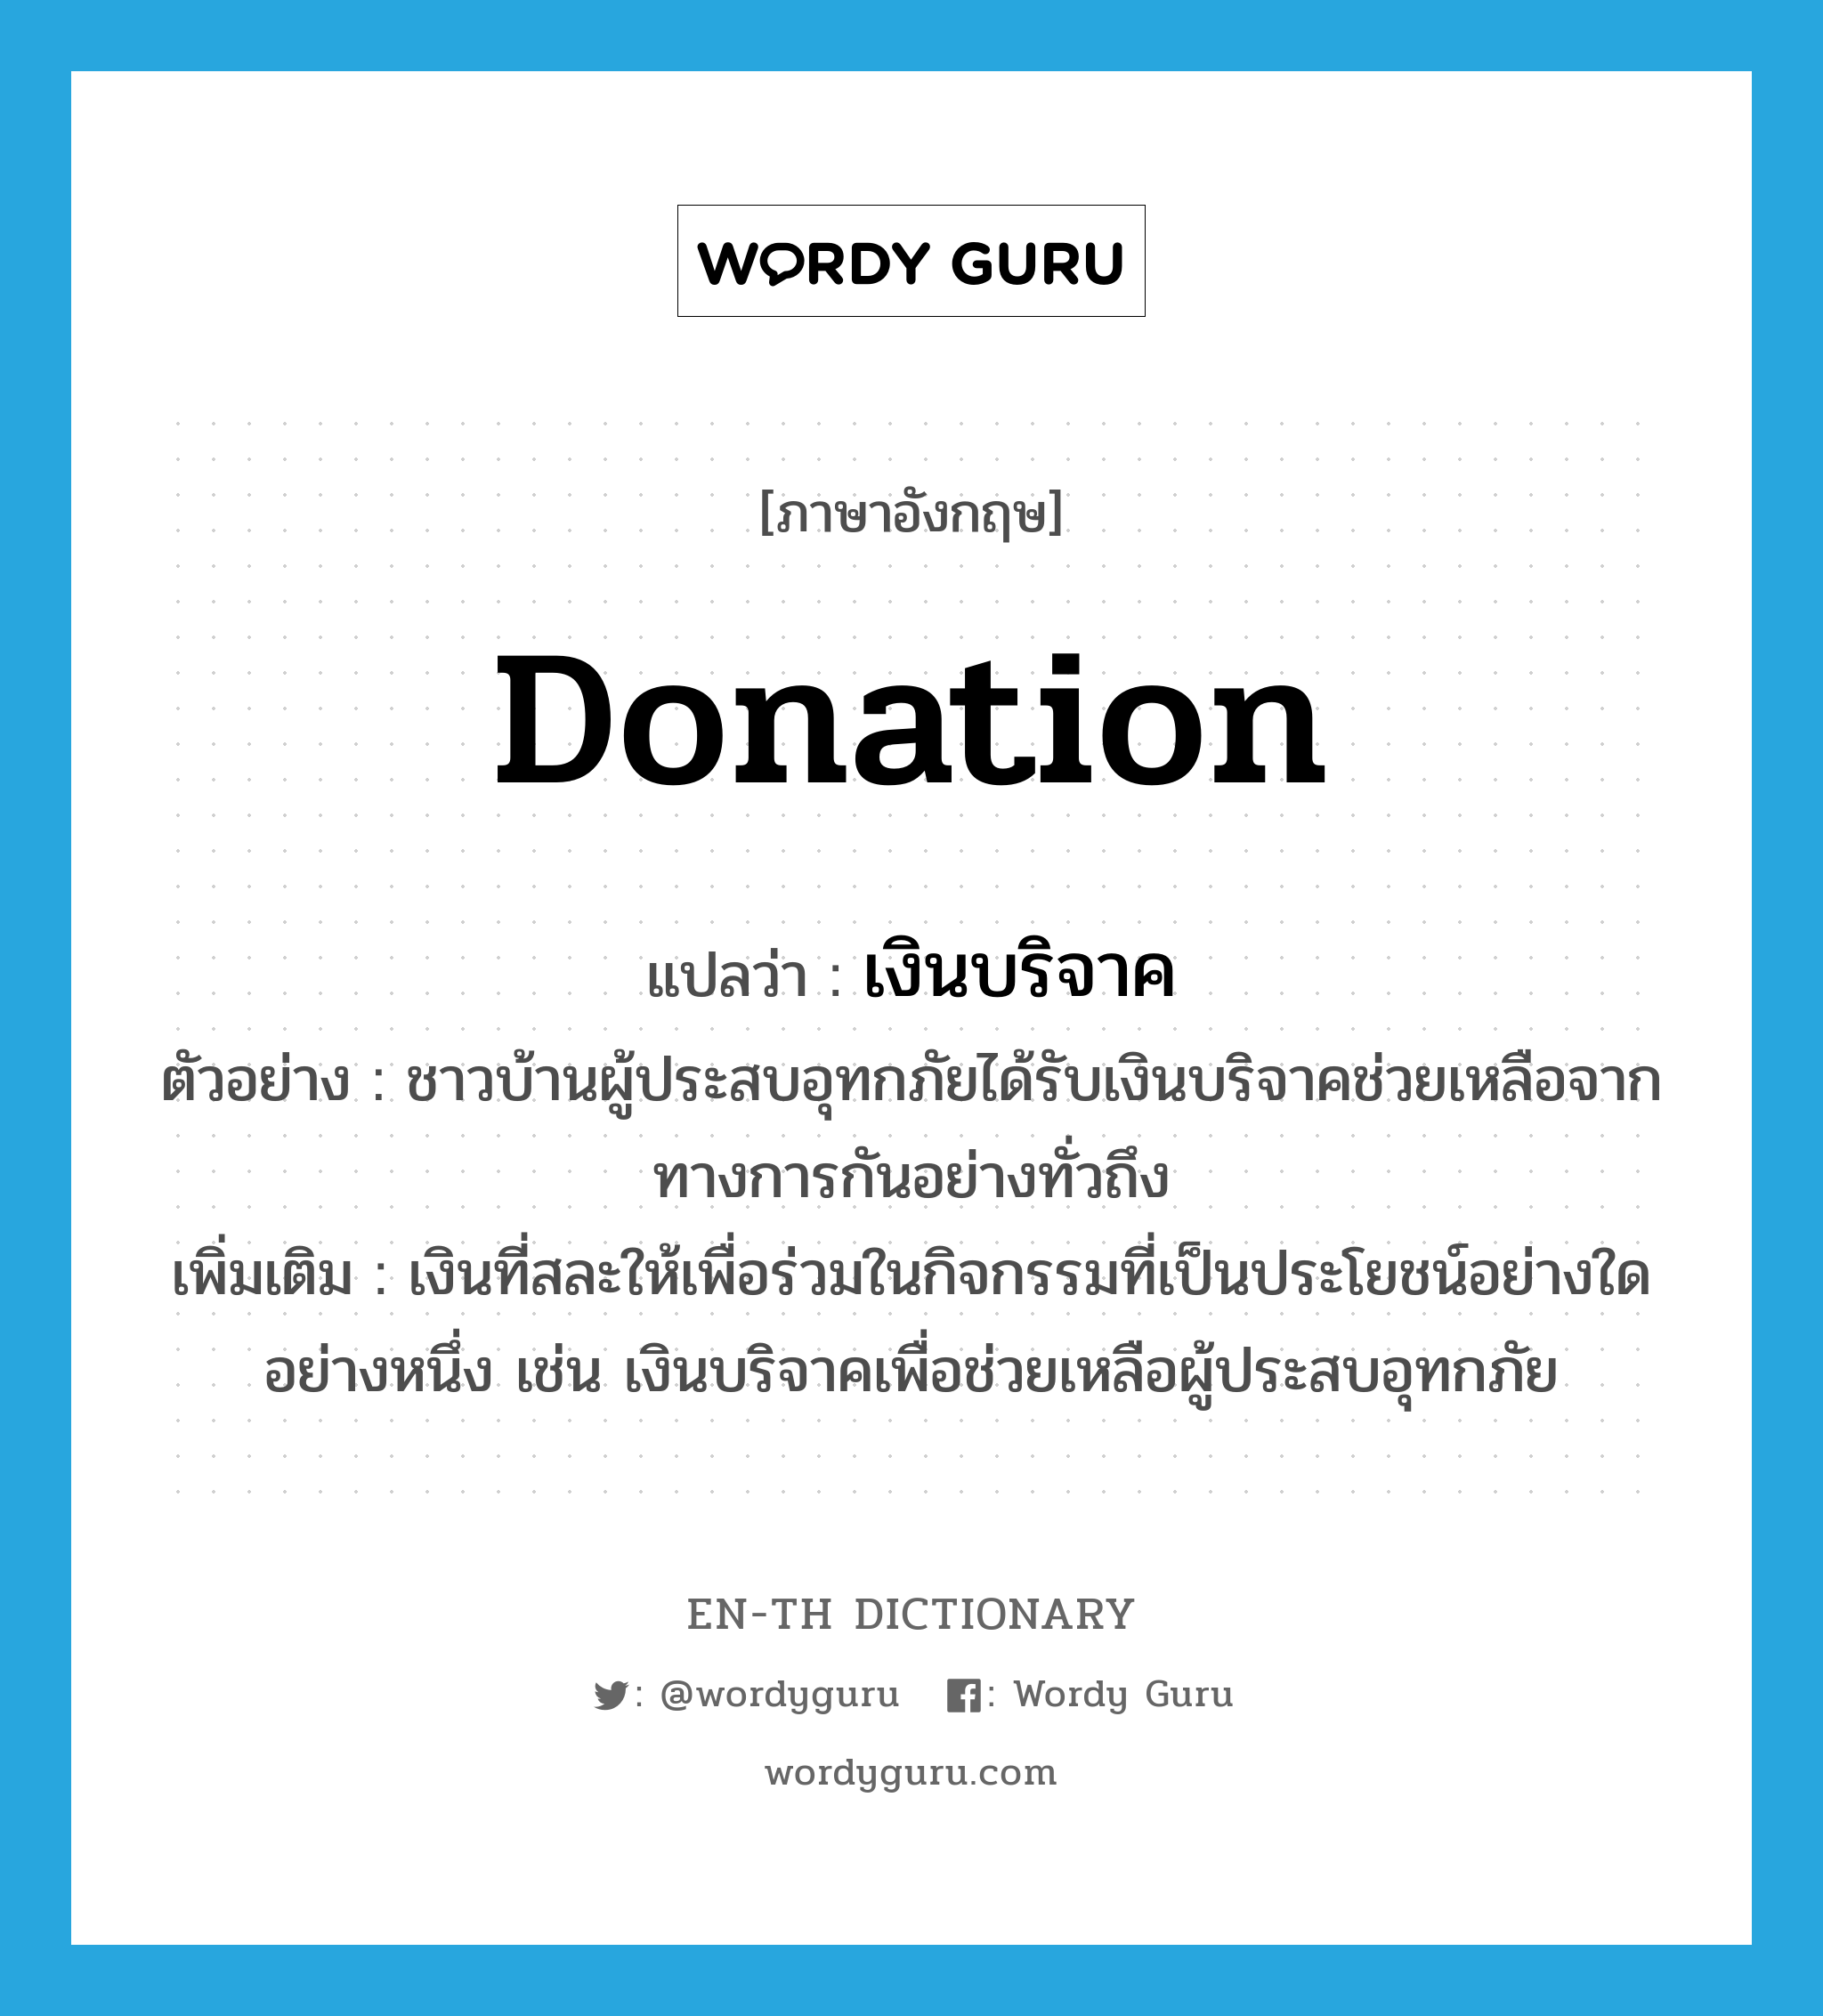 donation แปลว่า?, คำศัพท์ภาษาอังกฤษ donation แปลว่า เงินบริจาค ประเภท N ตัวอย่าง ชาวบ้านผู้ประสบอุทกภัยได้รับเงินบริจาคช่วยเหลือจากทางการกันอย่างทั่วถึง เพิ่มเติม เงินที่สละให้เพื่อร่วมในกิจกรรมที่เป็นประโยชน์อย่างใดอย่างหนึ่ง เช่น เงินบริจาคเพื่อช่วยเหลือผู้ประสบอุทกภัย หมวด N